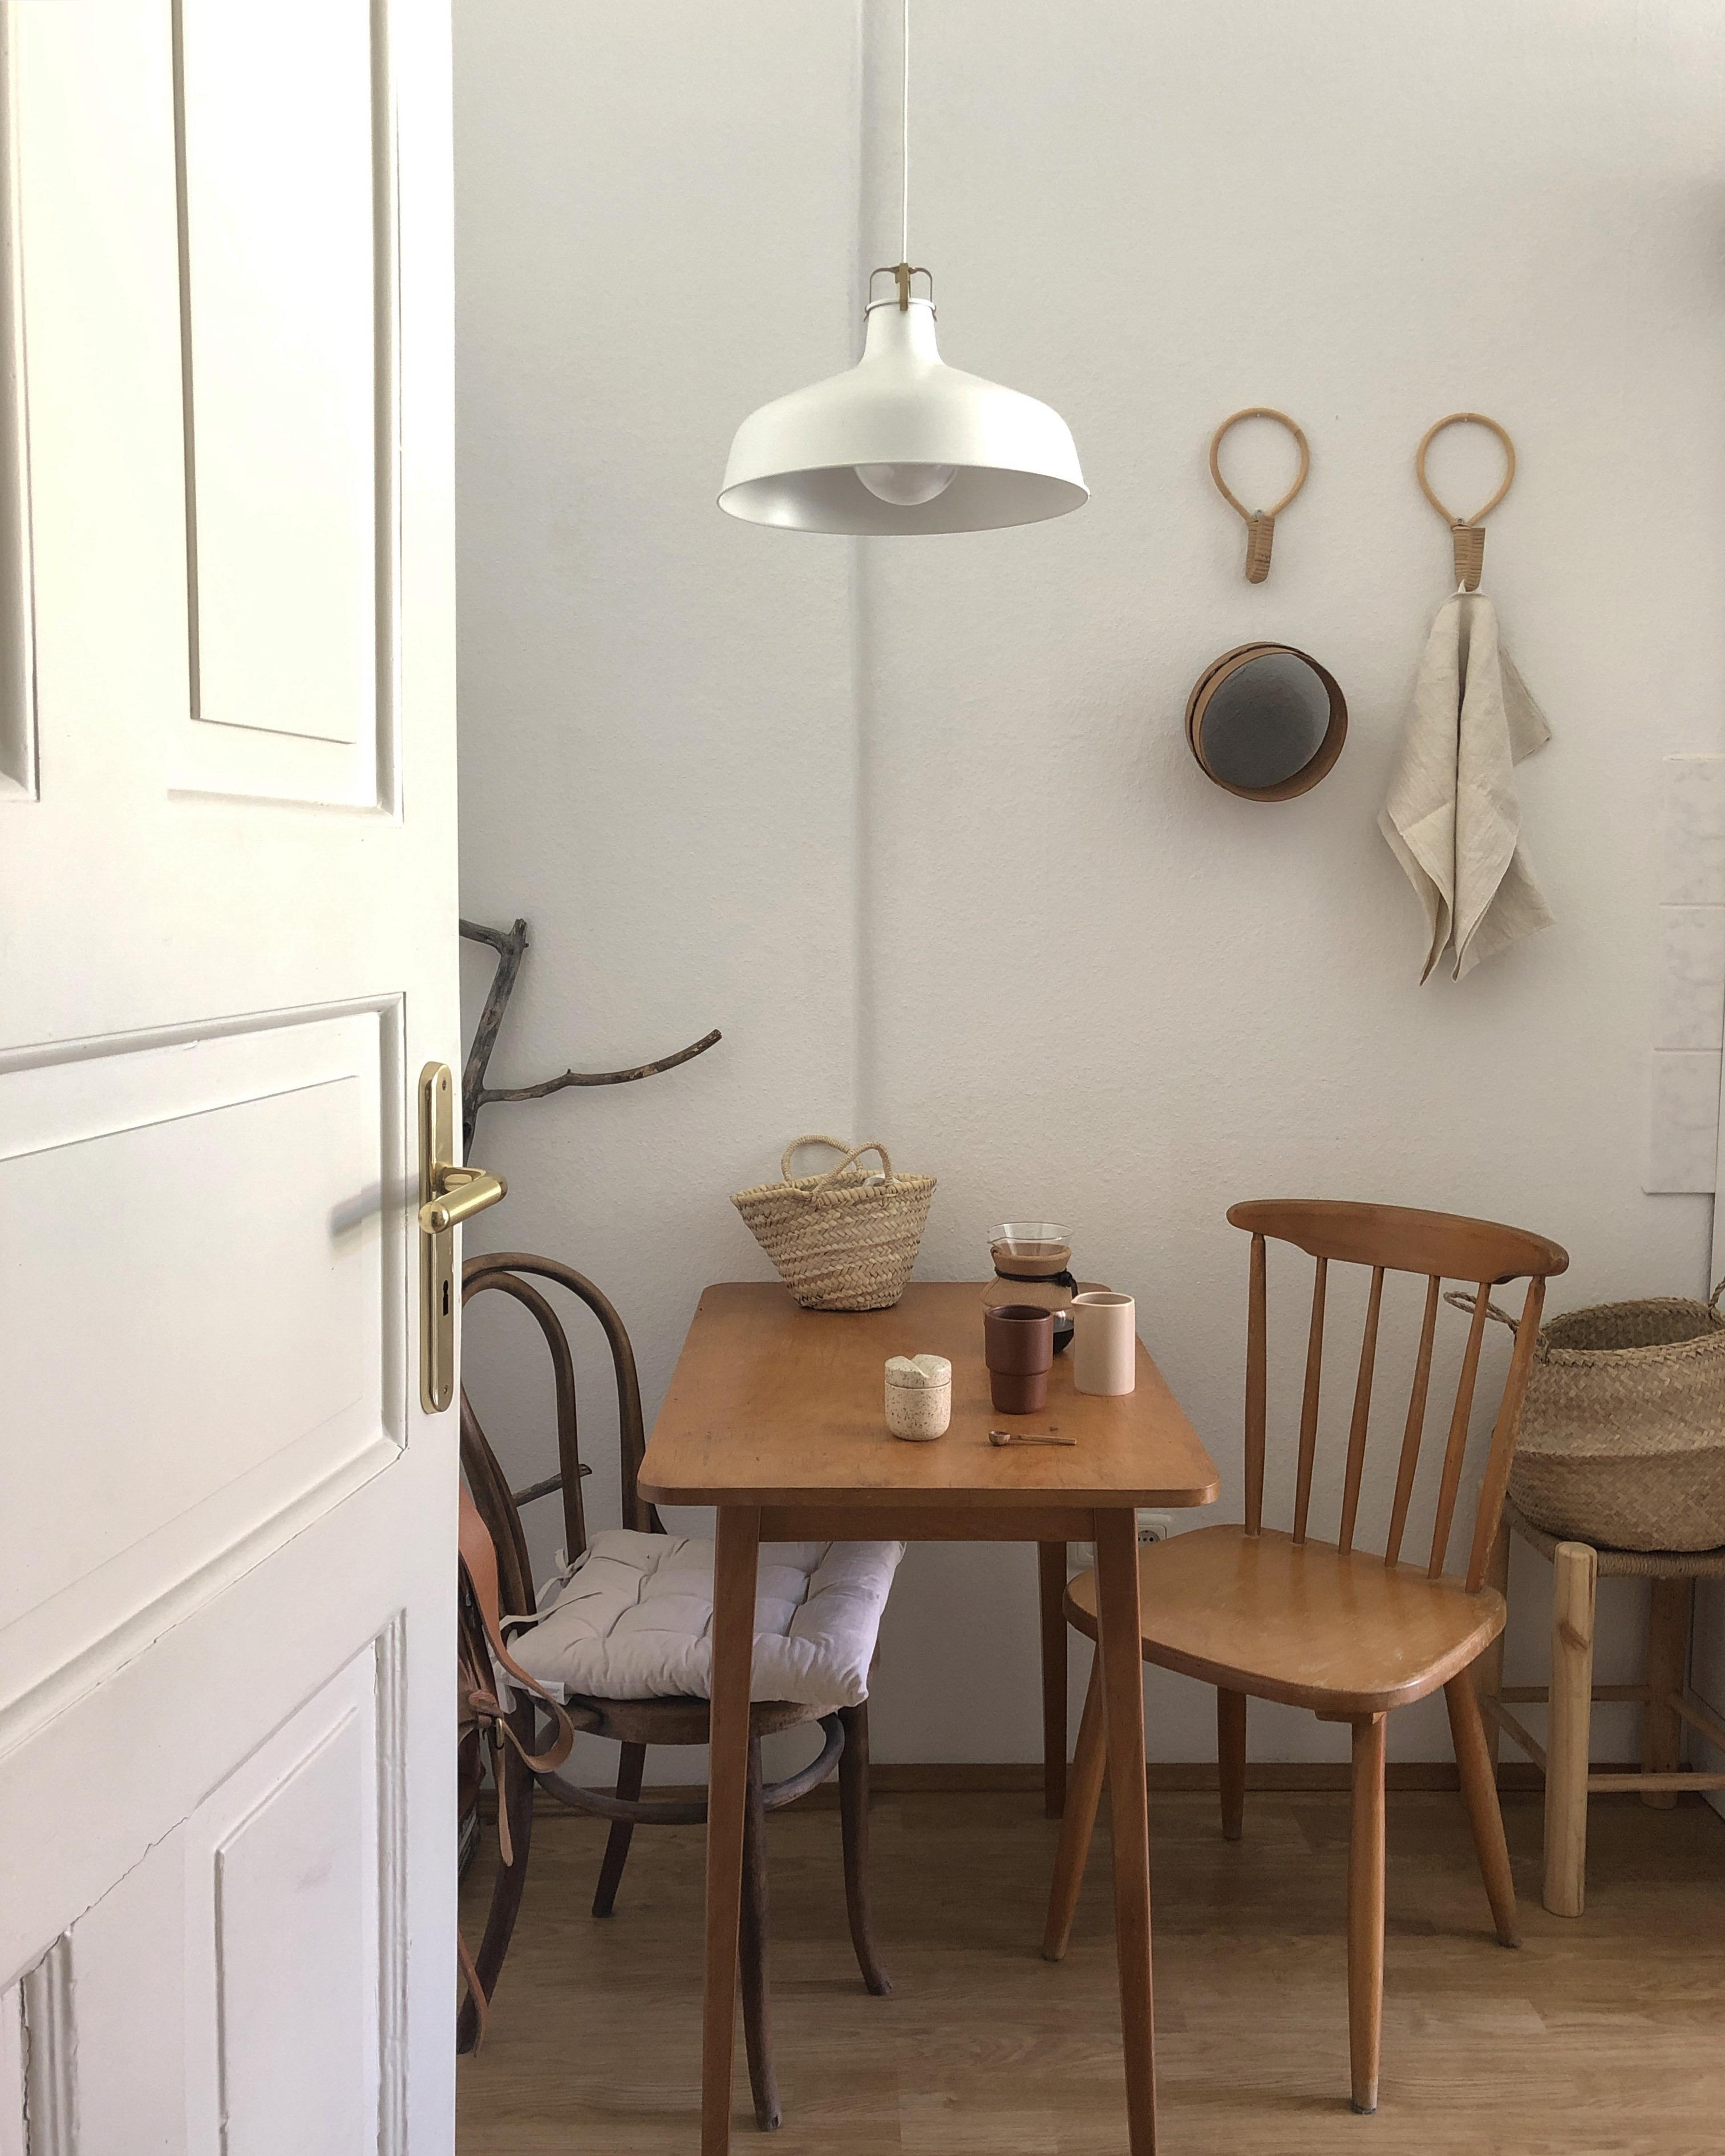 Unsere kleine Sitzecke in der Küche. #essecke #sitzecke #altbau #gemütlich #holz #minimalistisch 